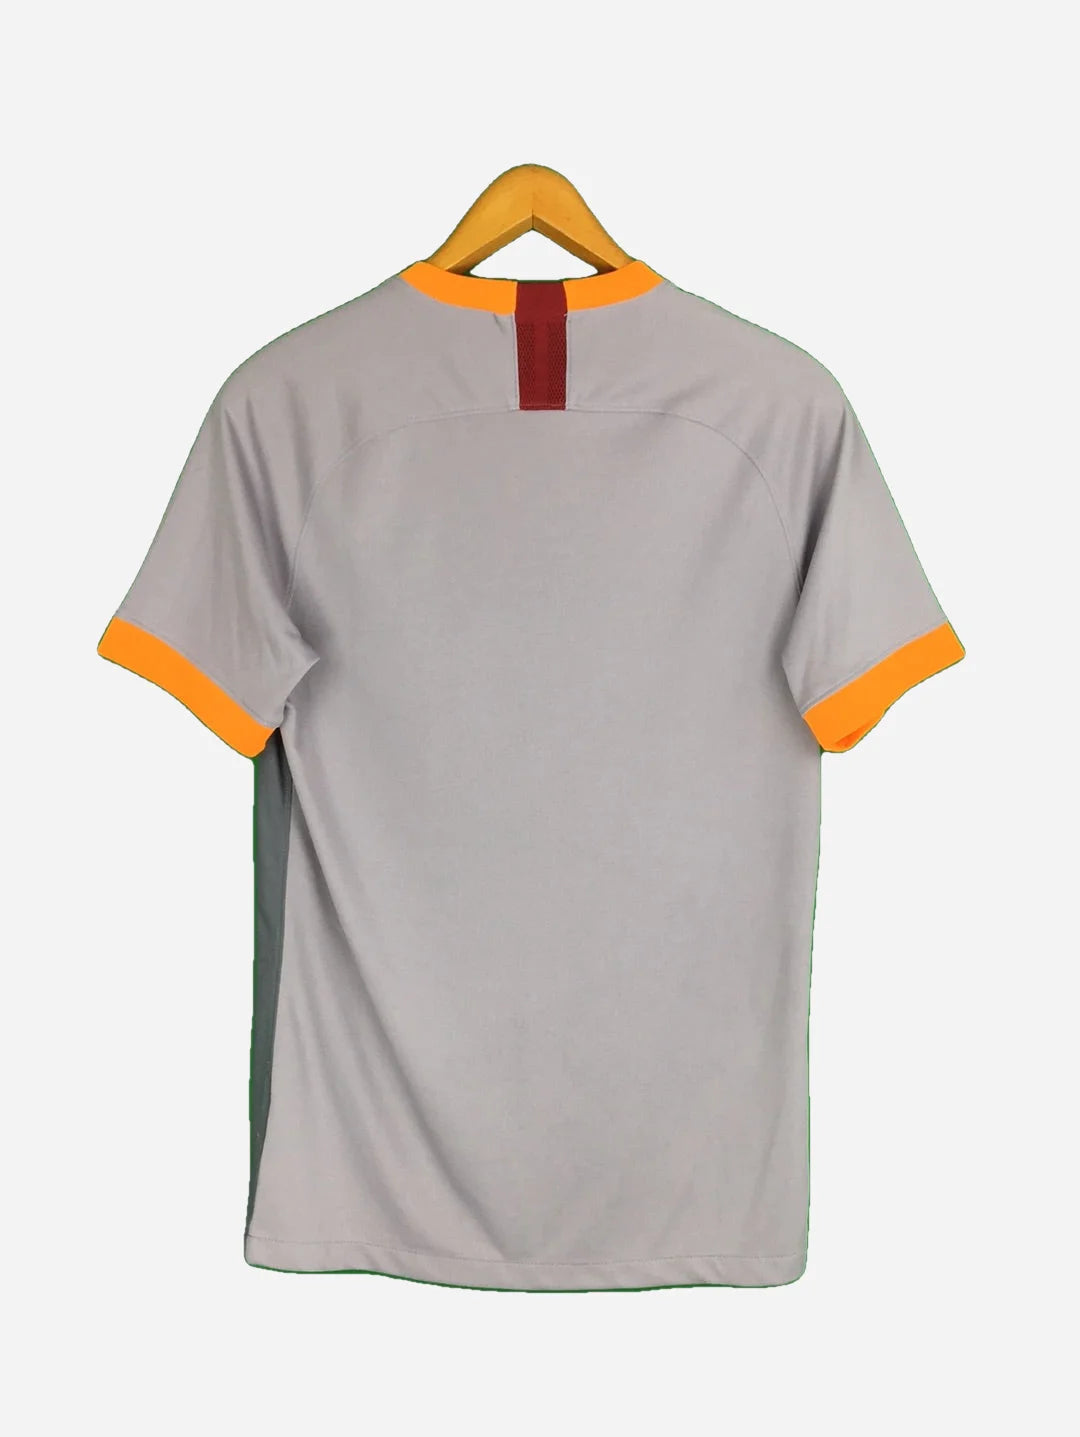 Nike Galatasaray jersey (S)